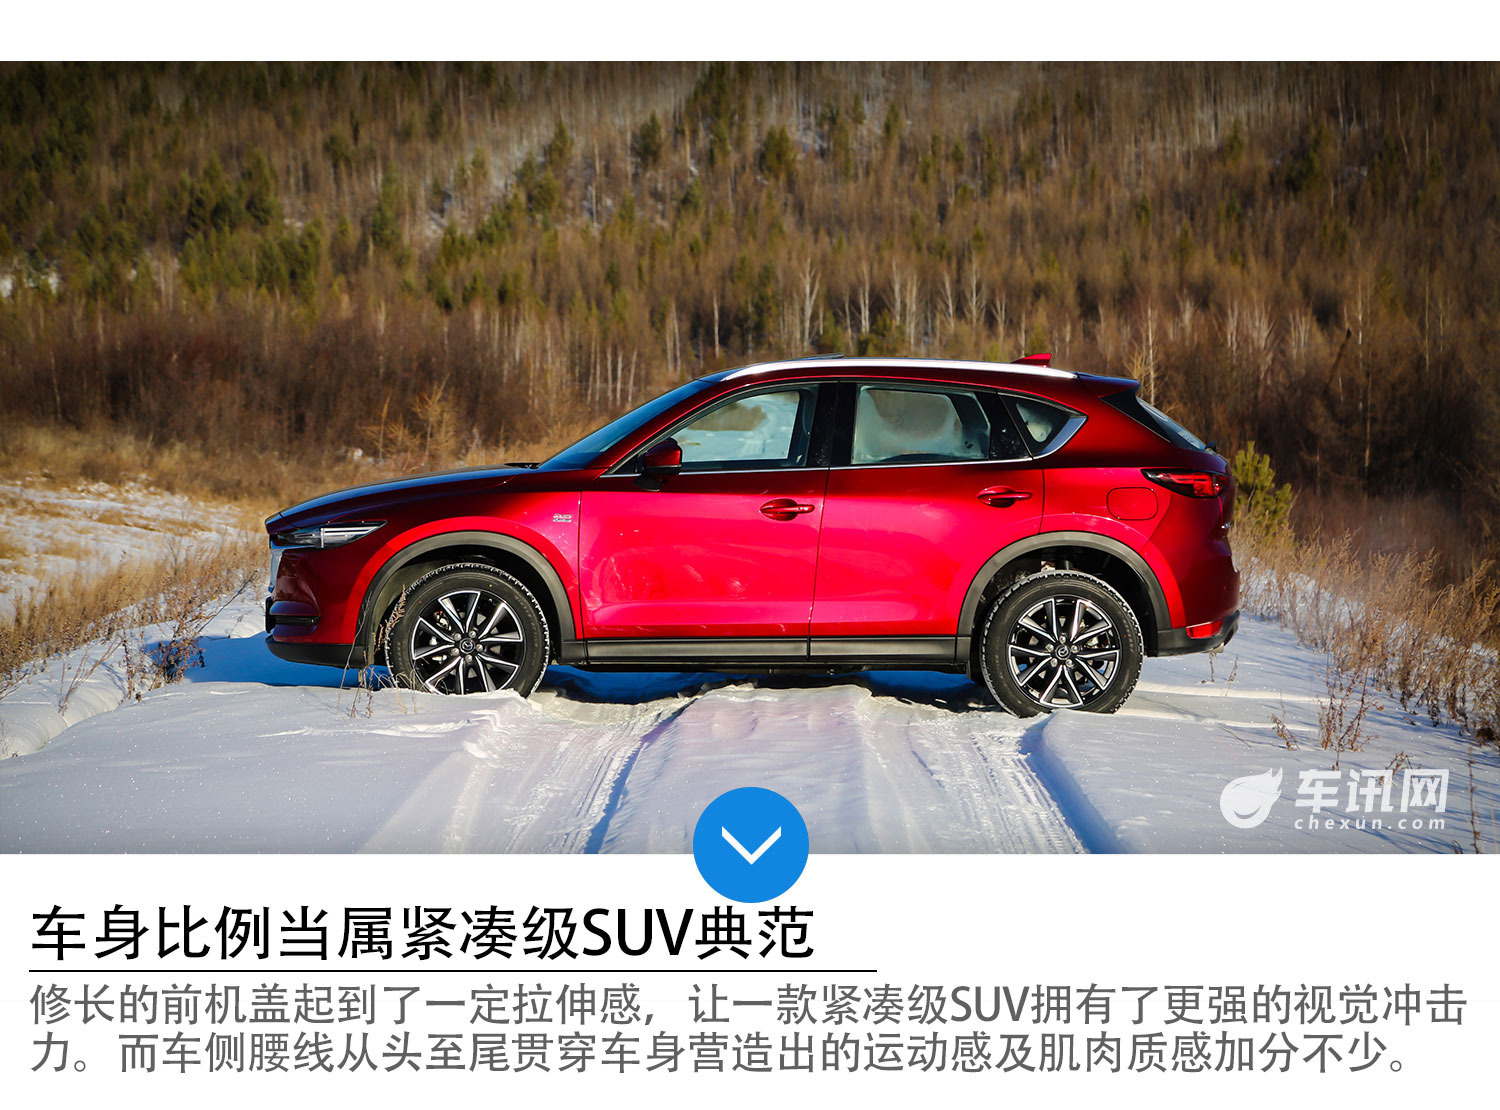 中国最北端的冰雪挑战 试第二代Mazda CX-5